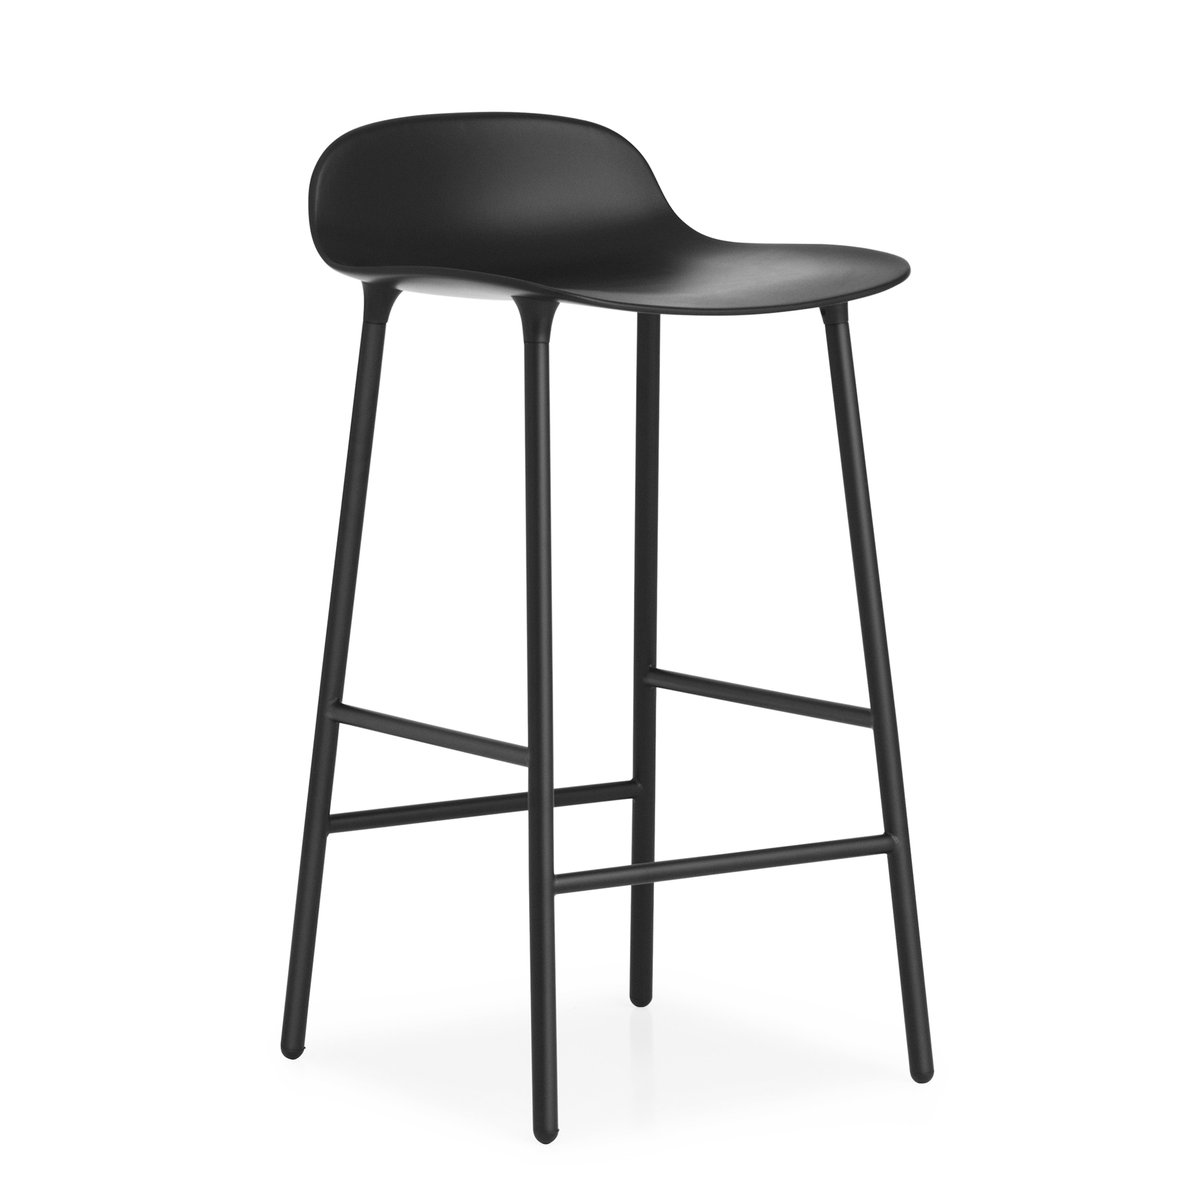 Normann Copenhagen Form Chair barkruk metalen poten zwart